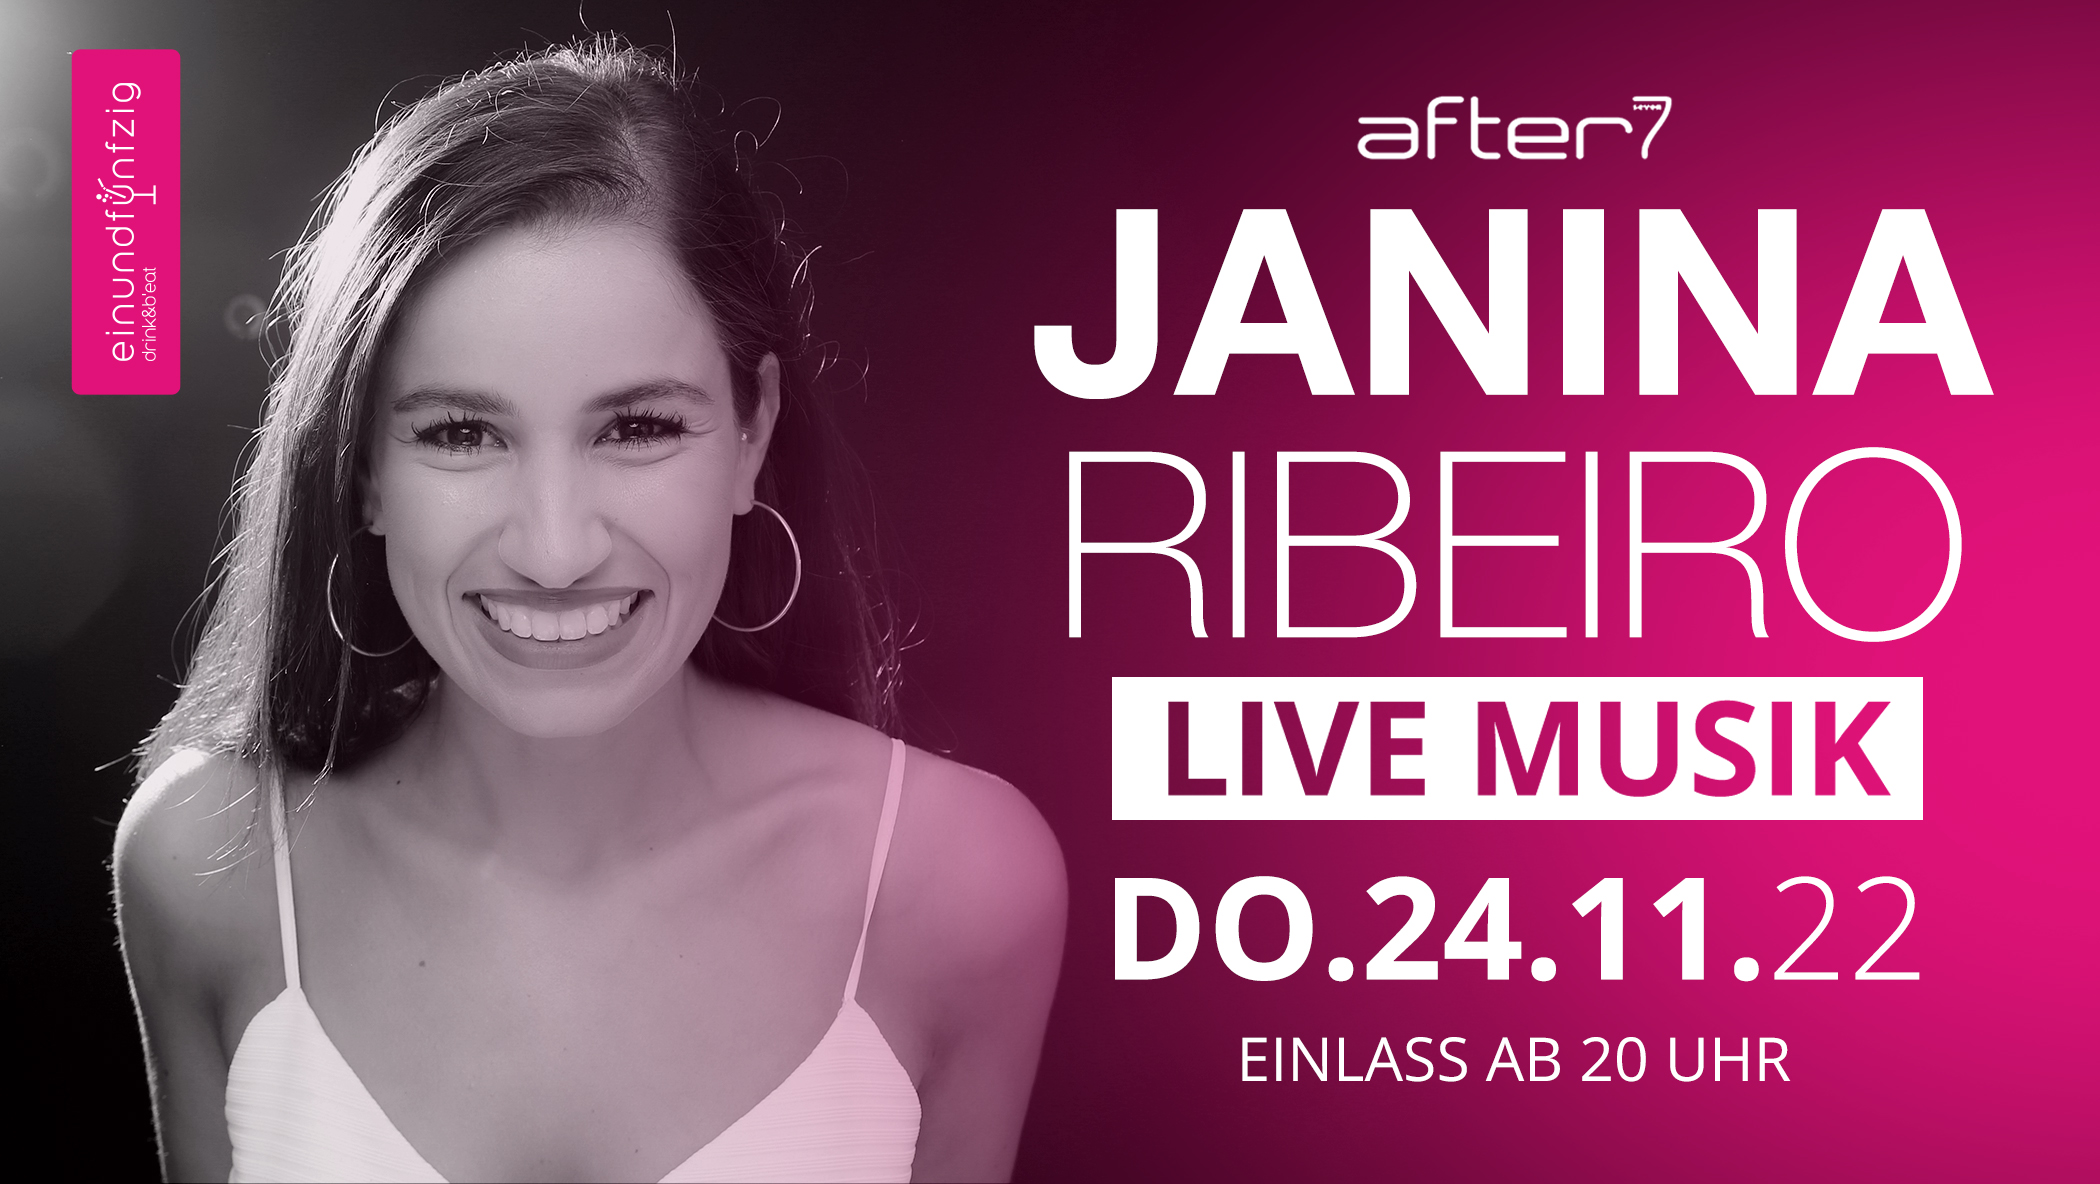 24.11.2022 – Janina Ribeiro – After7